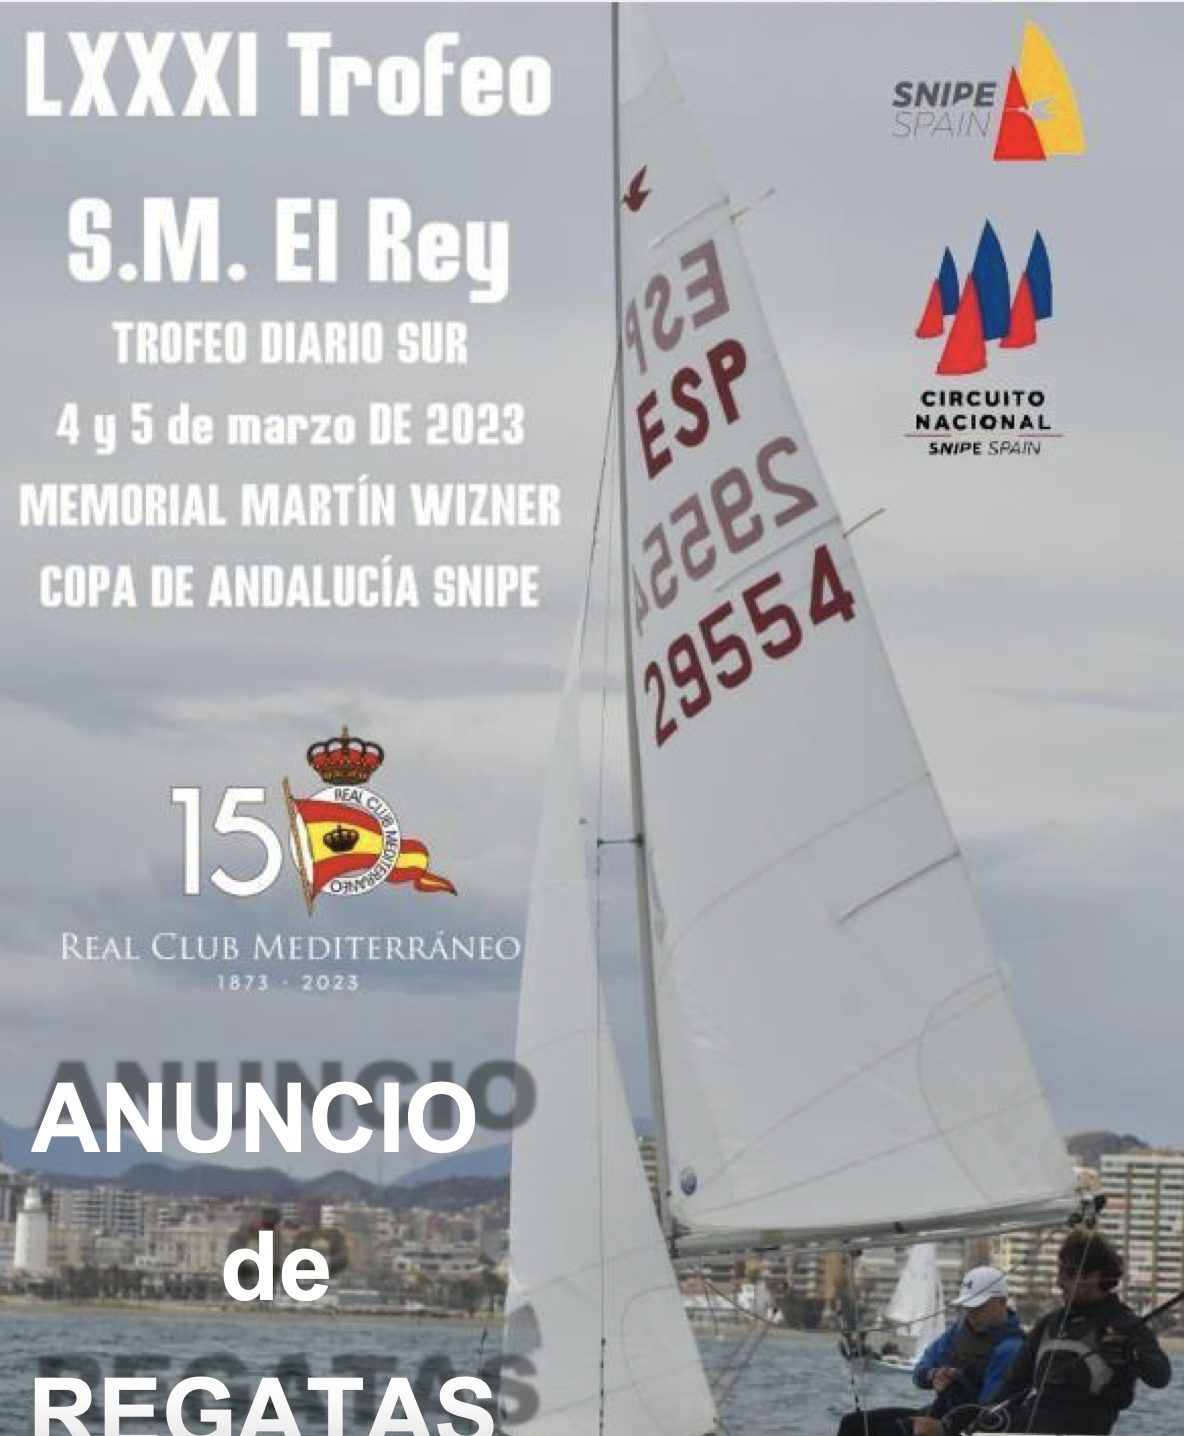 Trofeo S.M. El Rey – Copa de Andalucia Image